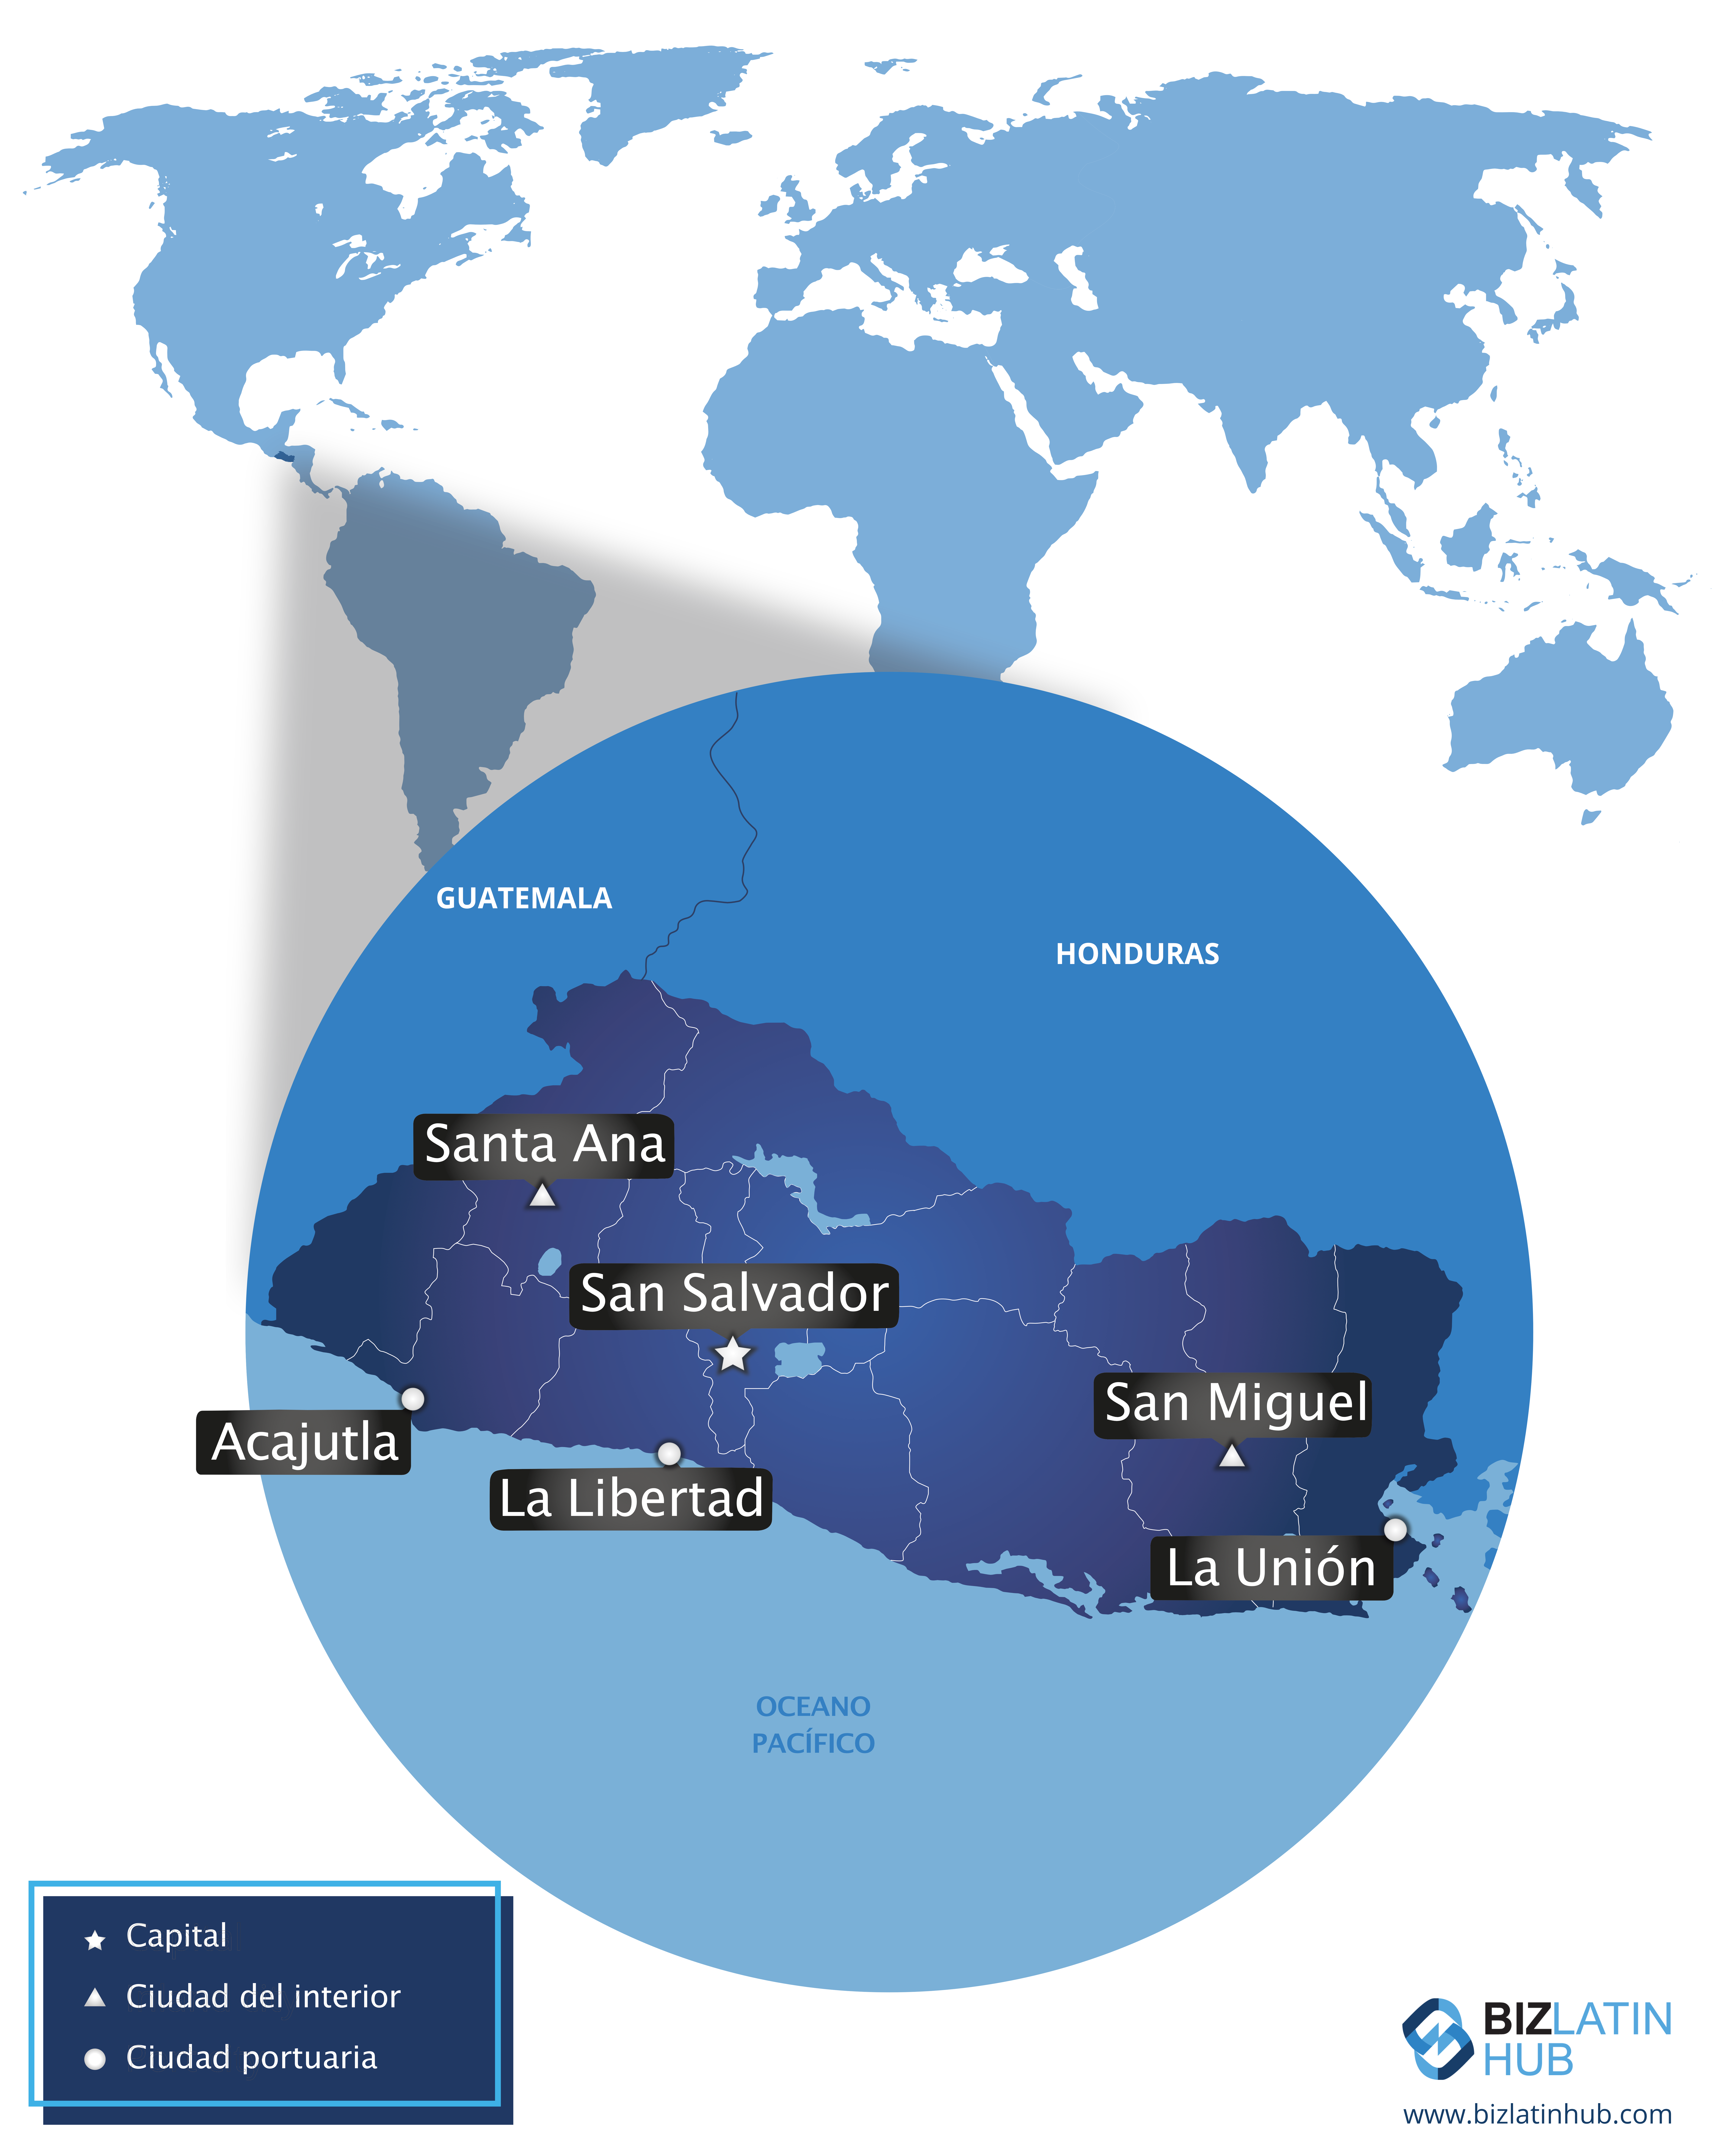 Mapa de El Salvador y sus ciudades principales, información importantes para cualquiera interesado en iniciar un negocio en El Salvador